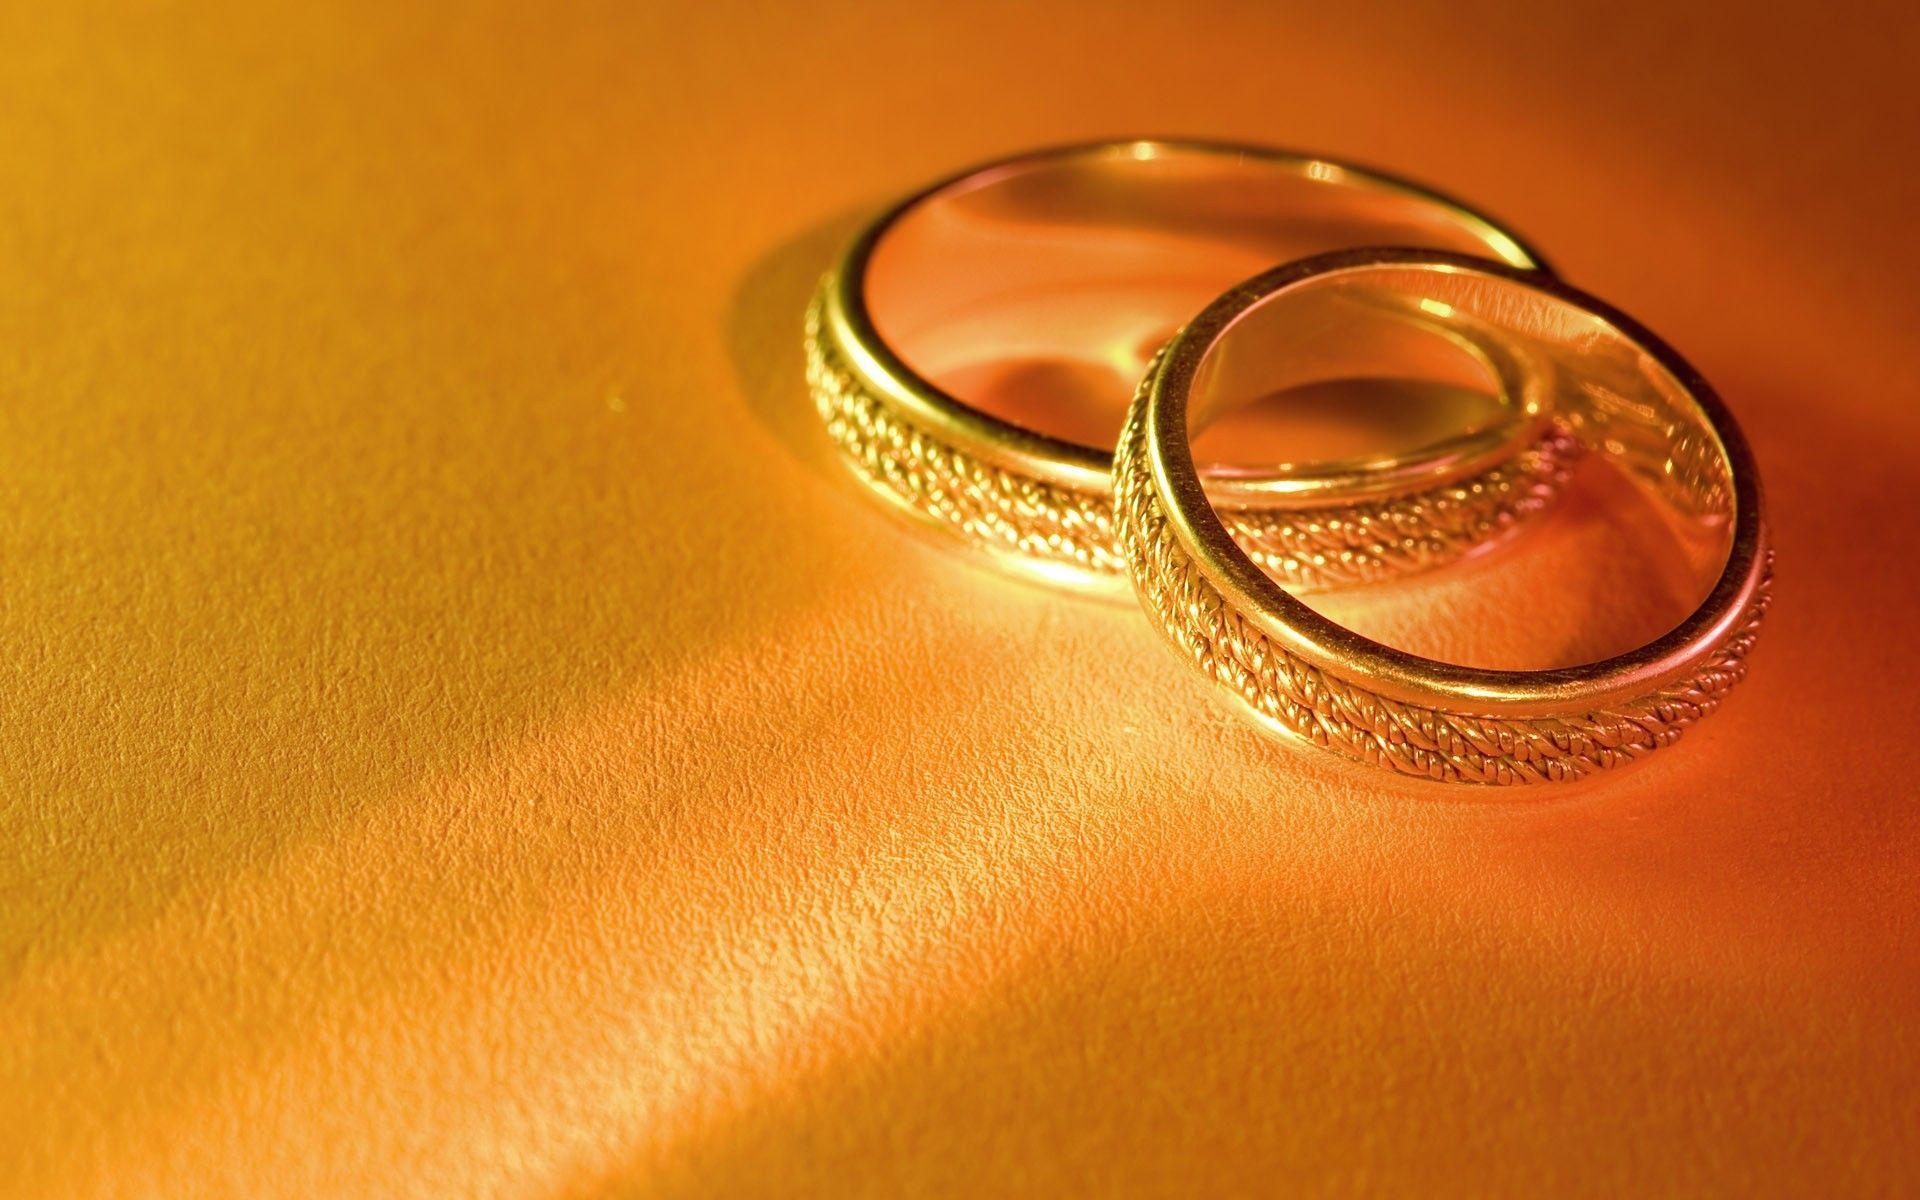 Chào mừng đến với bộ sưu tập nhẫn vàng đầy sang trọng và trân quý của chúng tôi. Hãy cùng khám phá vẻ đẹp đầy lộng lẫy của những chiếc nhẫn vàng tinh xảo này.